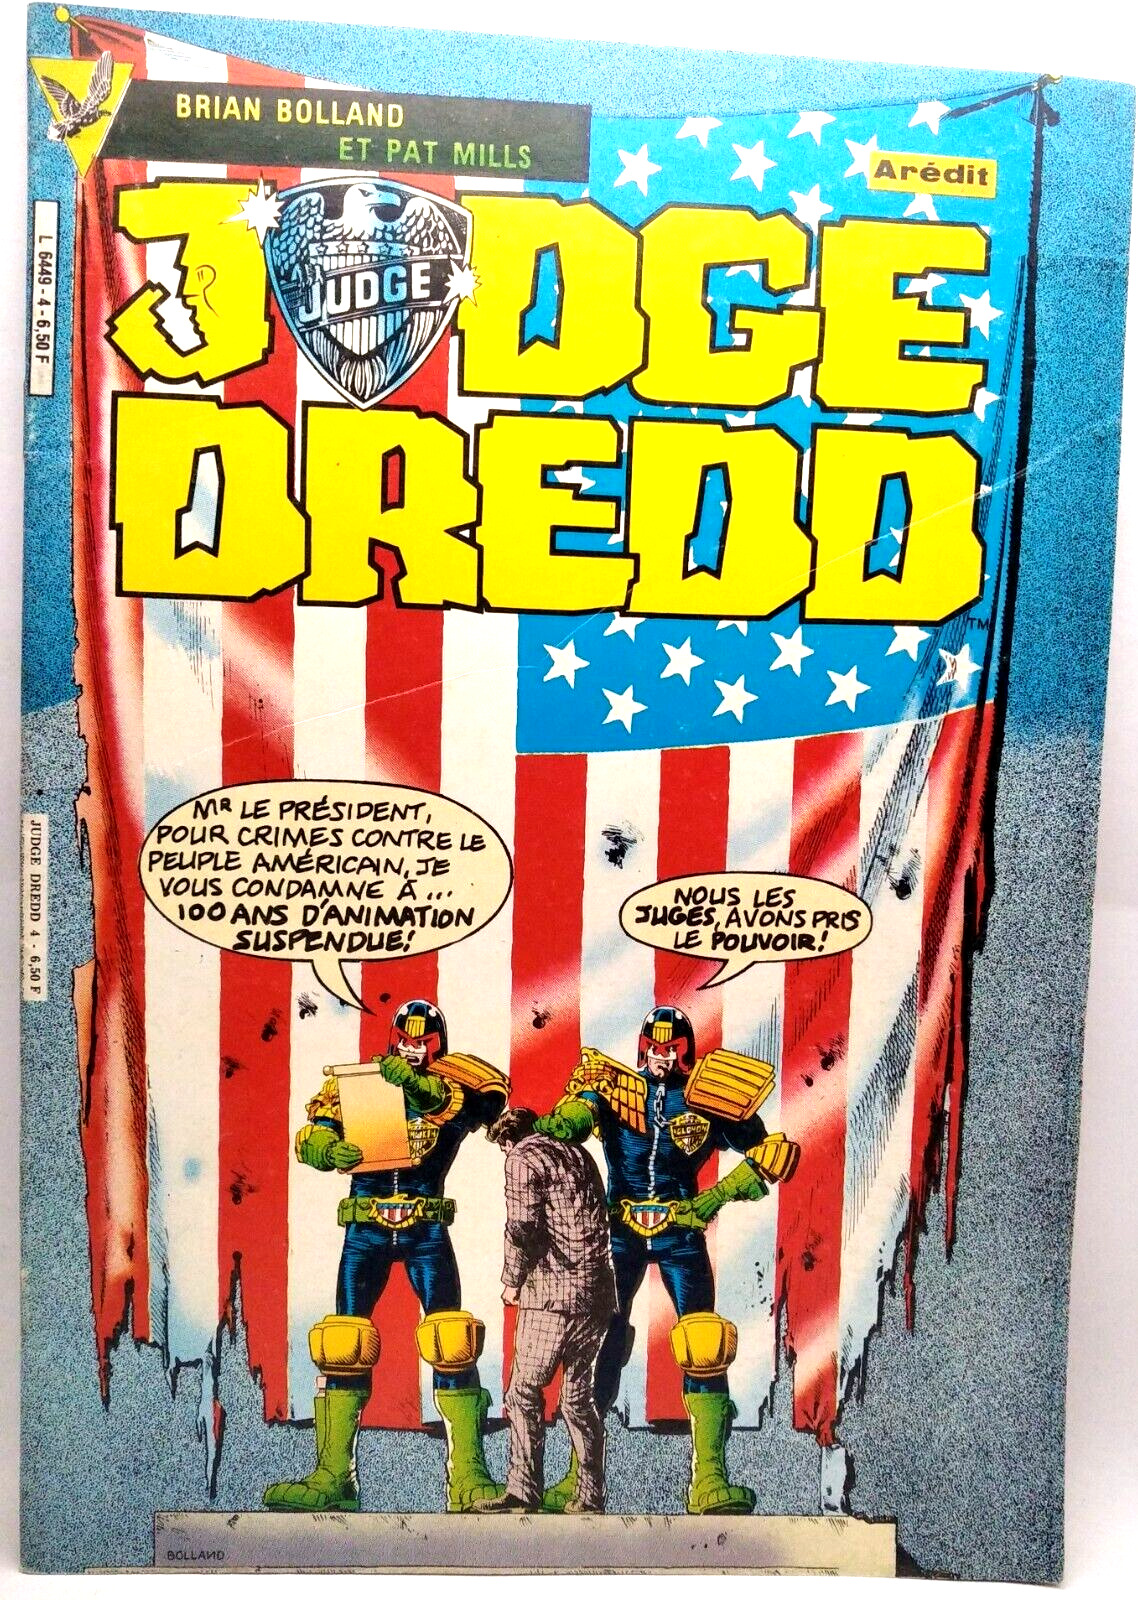 JUDGE DREDD #4 COMIC BOOK  VINTAGE 1983 FRENCH BOOK MARVEL AREDIT